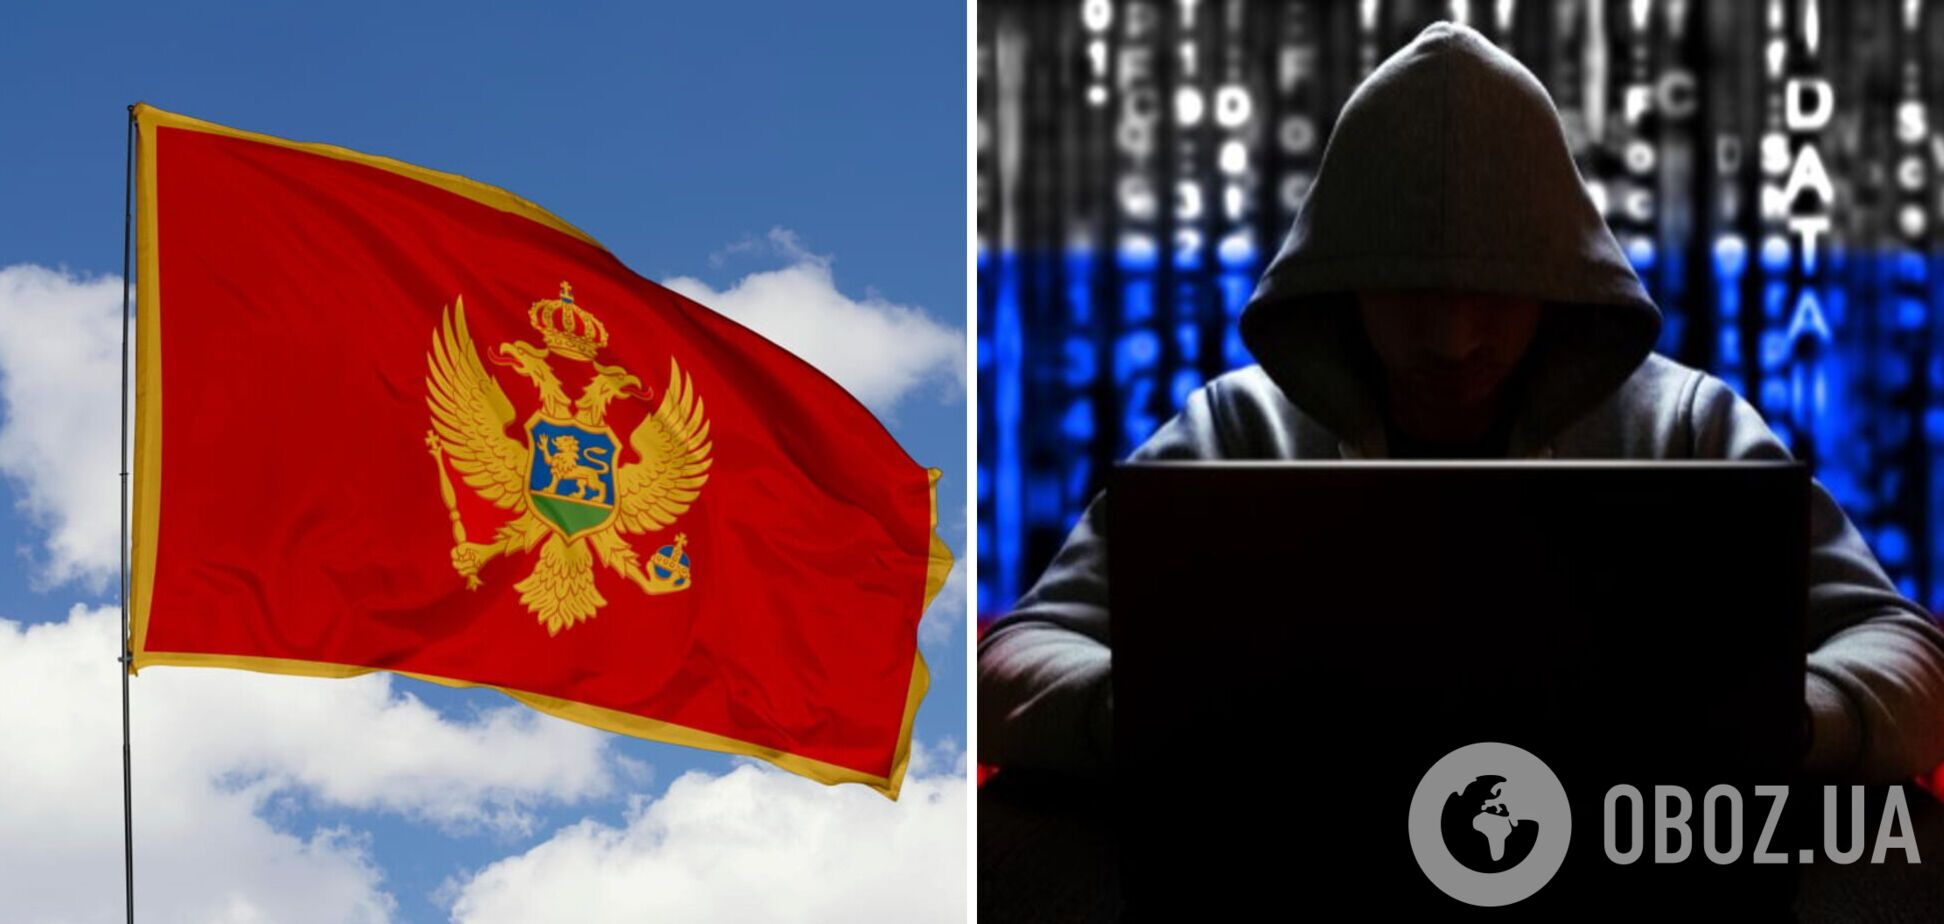 Черногория сообщила о масштабной кибератаке российских хакеров: что известно